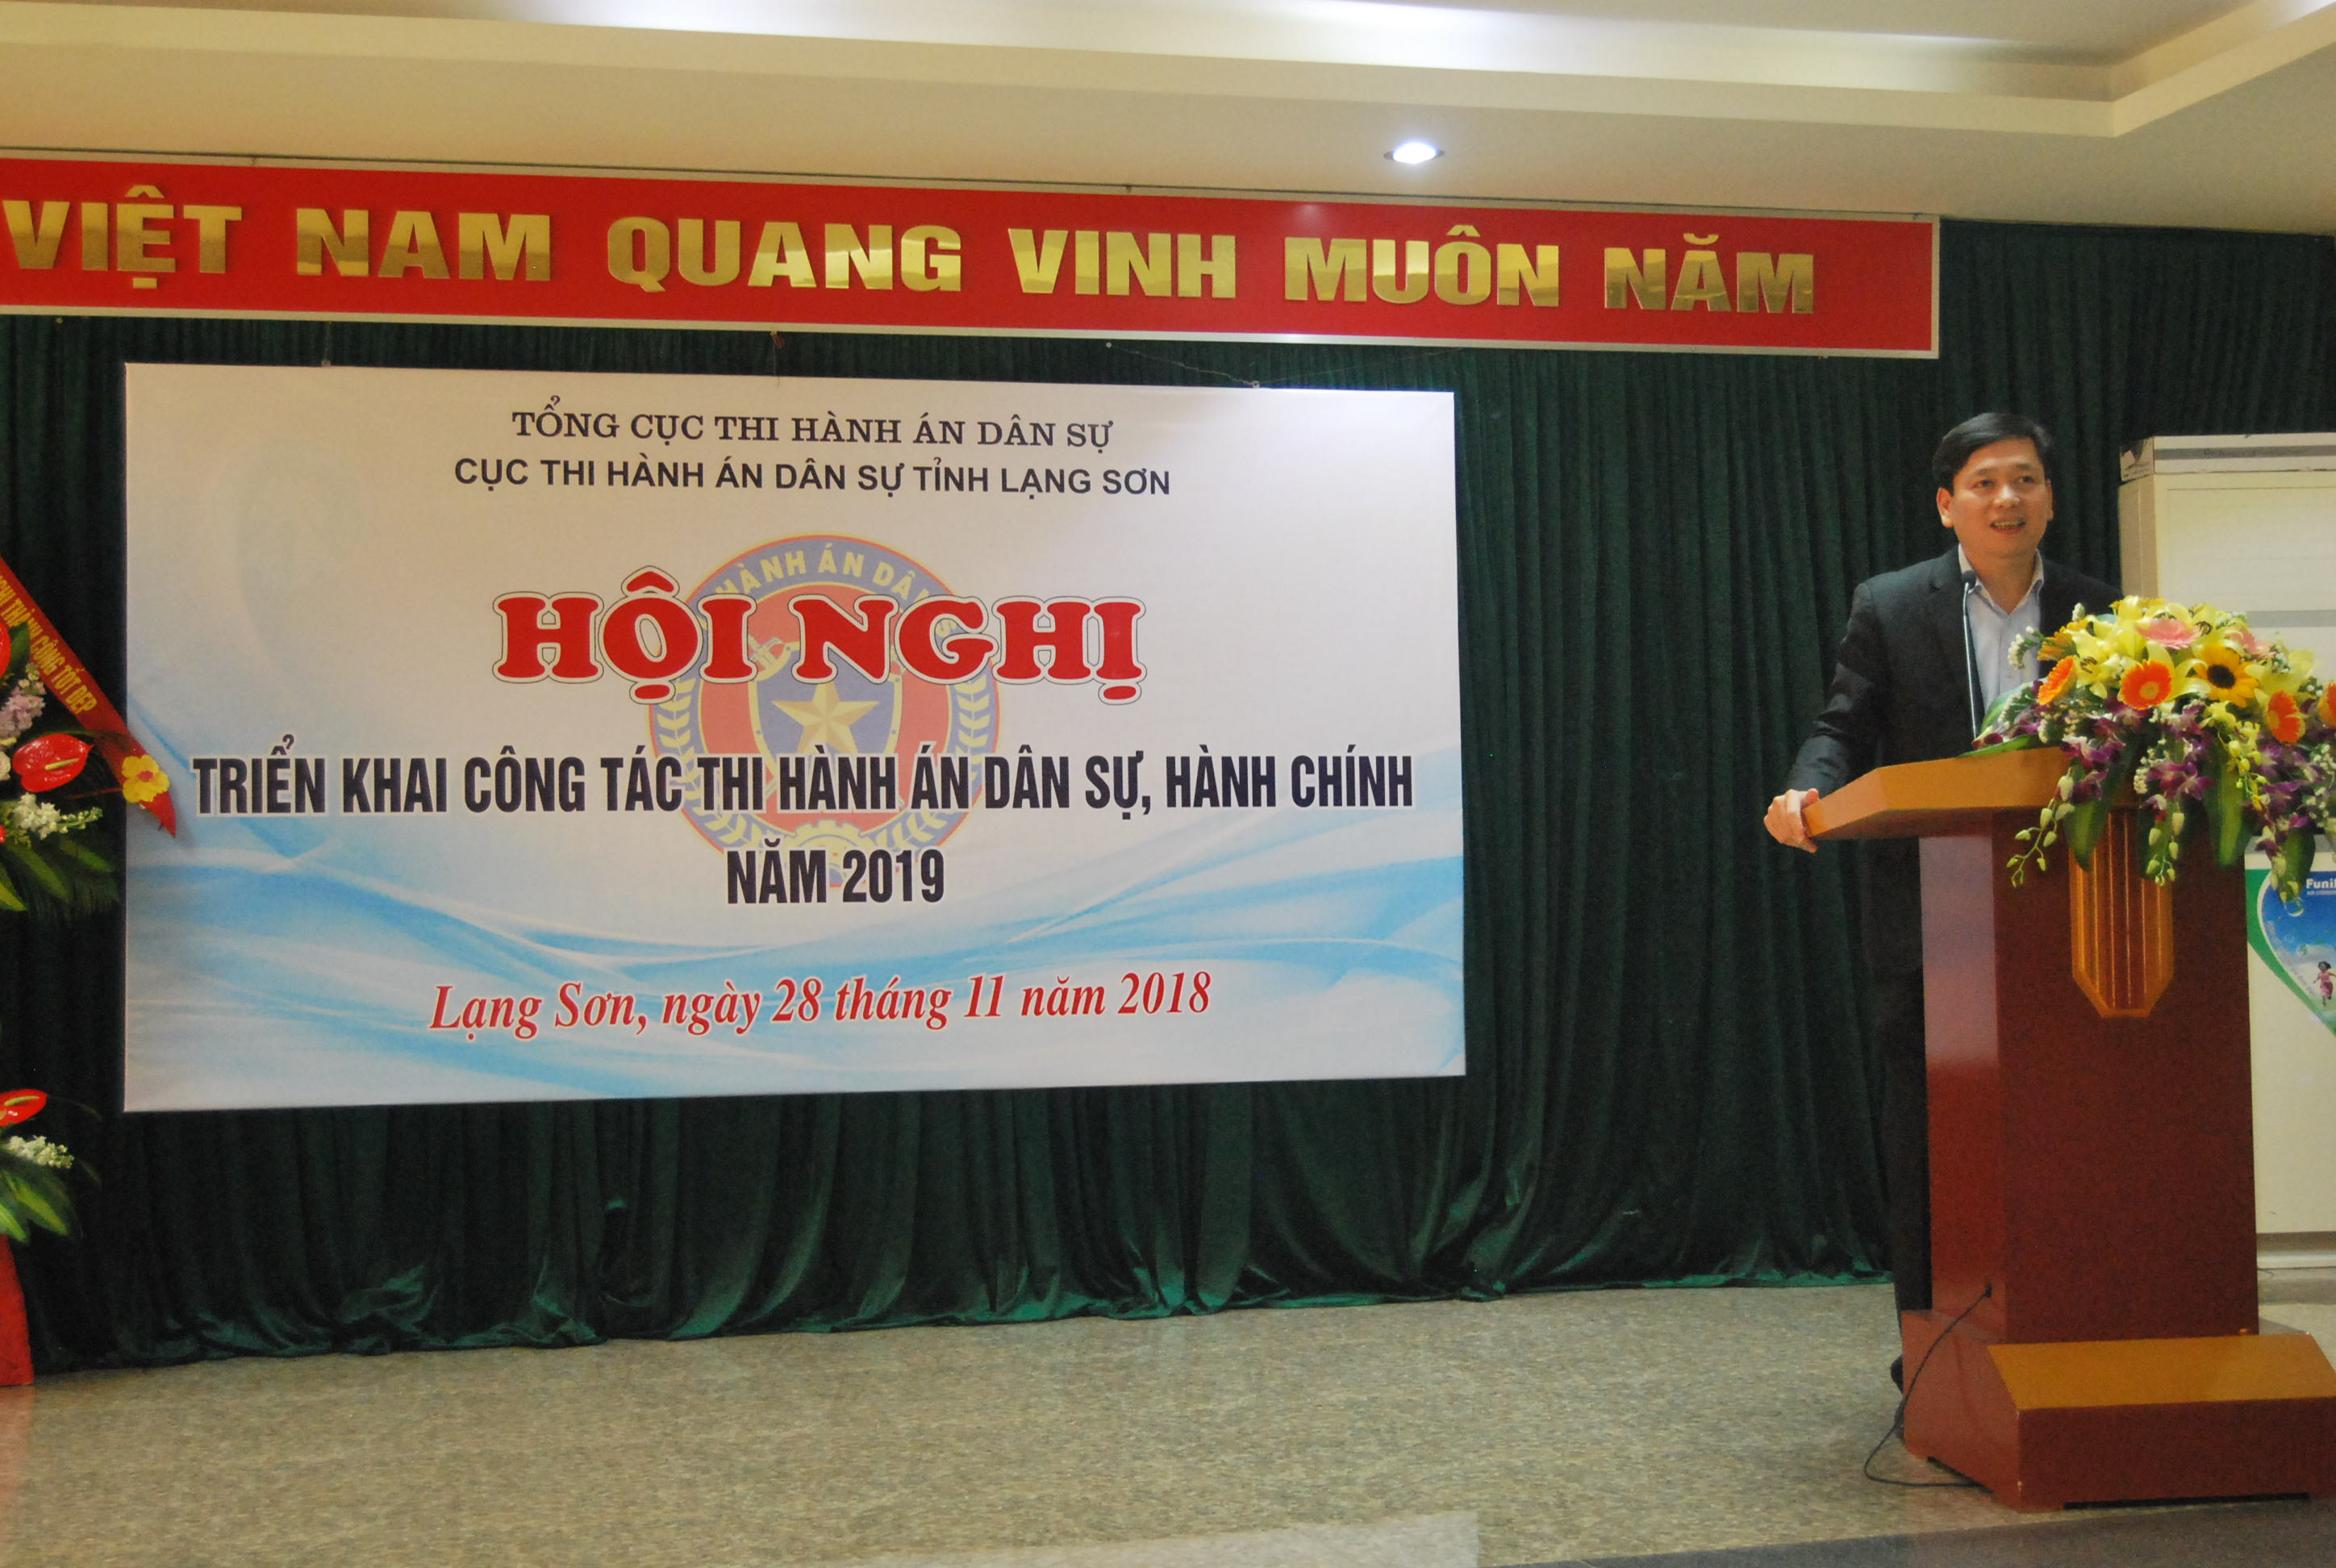 Lạng Sơn triển khai công tác Thi hành án dân sự, hành chính năm 2019